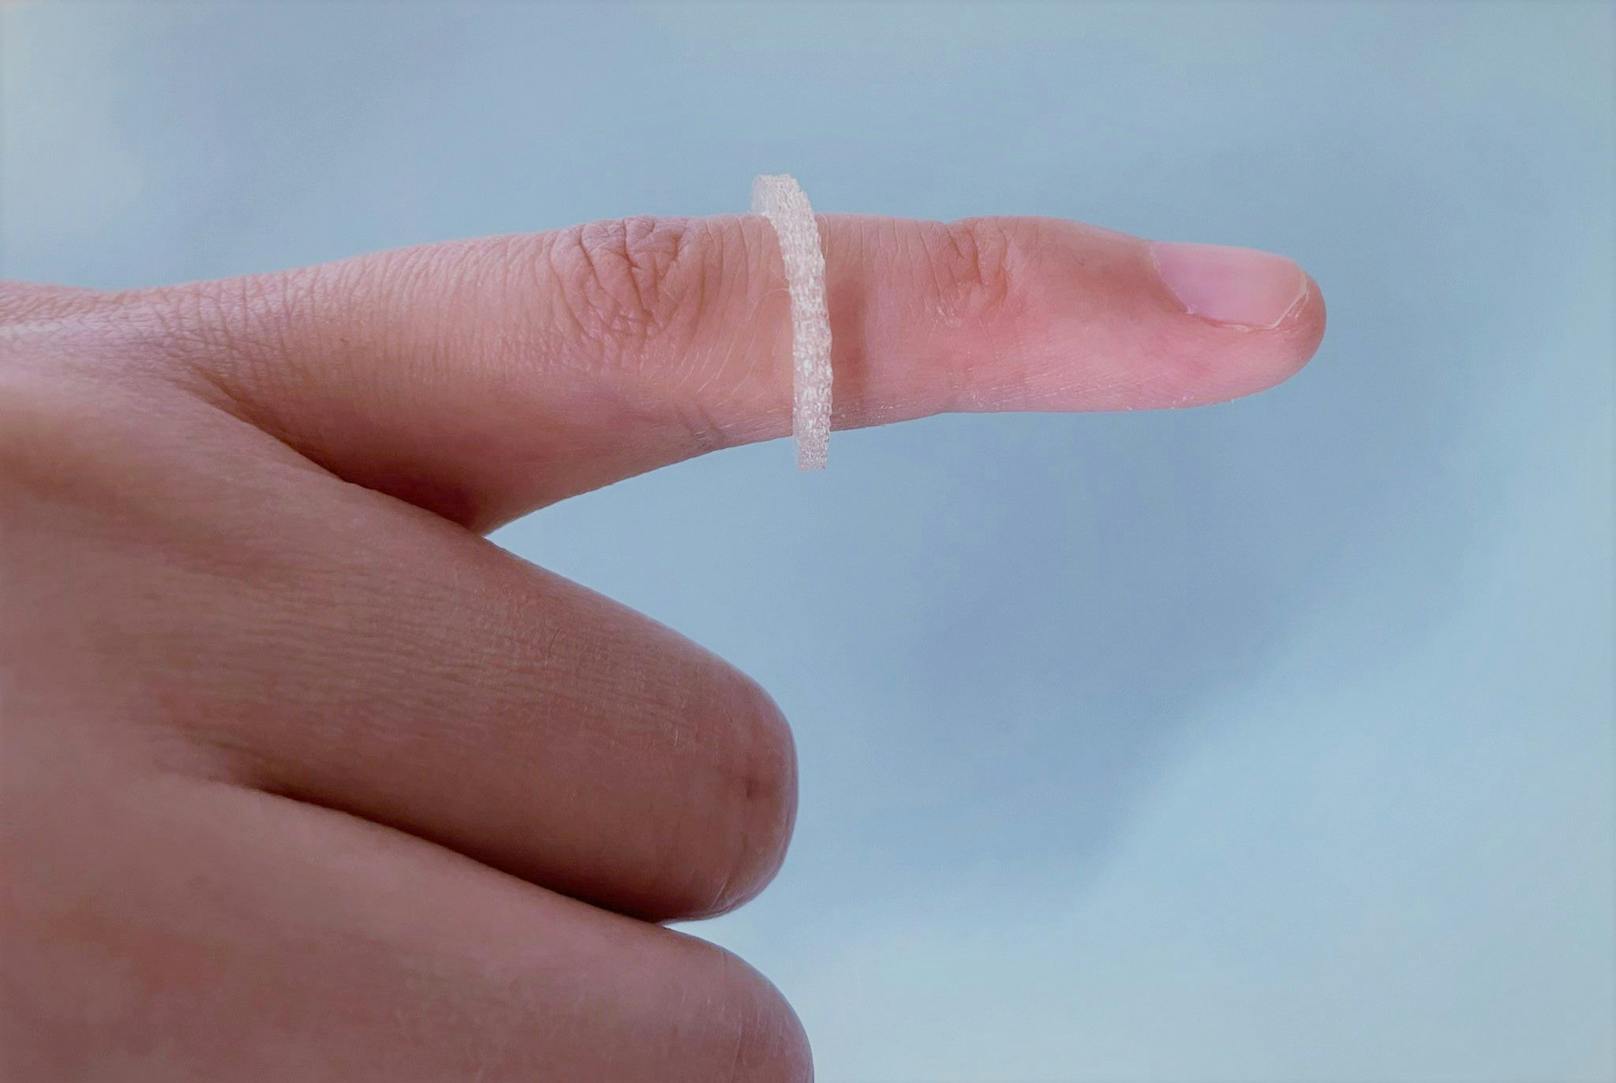 Bei dem von den Forschern gezeigten Fingerring handelt es sich zunächst um einen Prototyp.